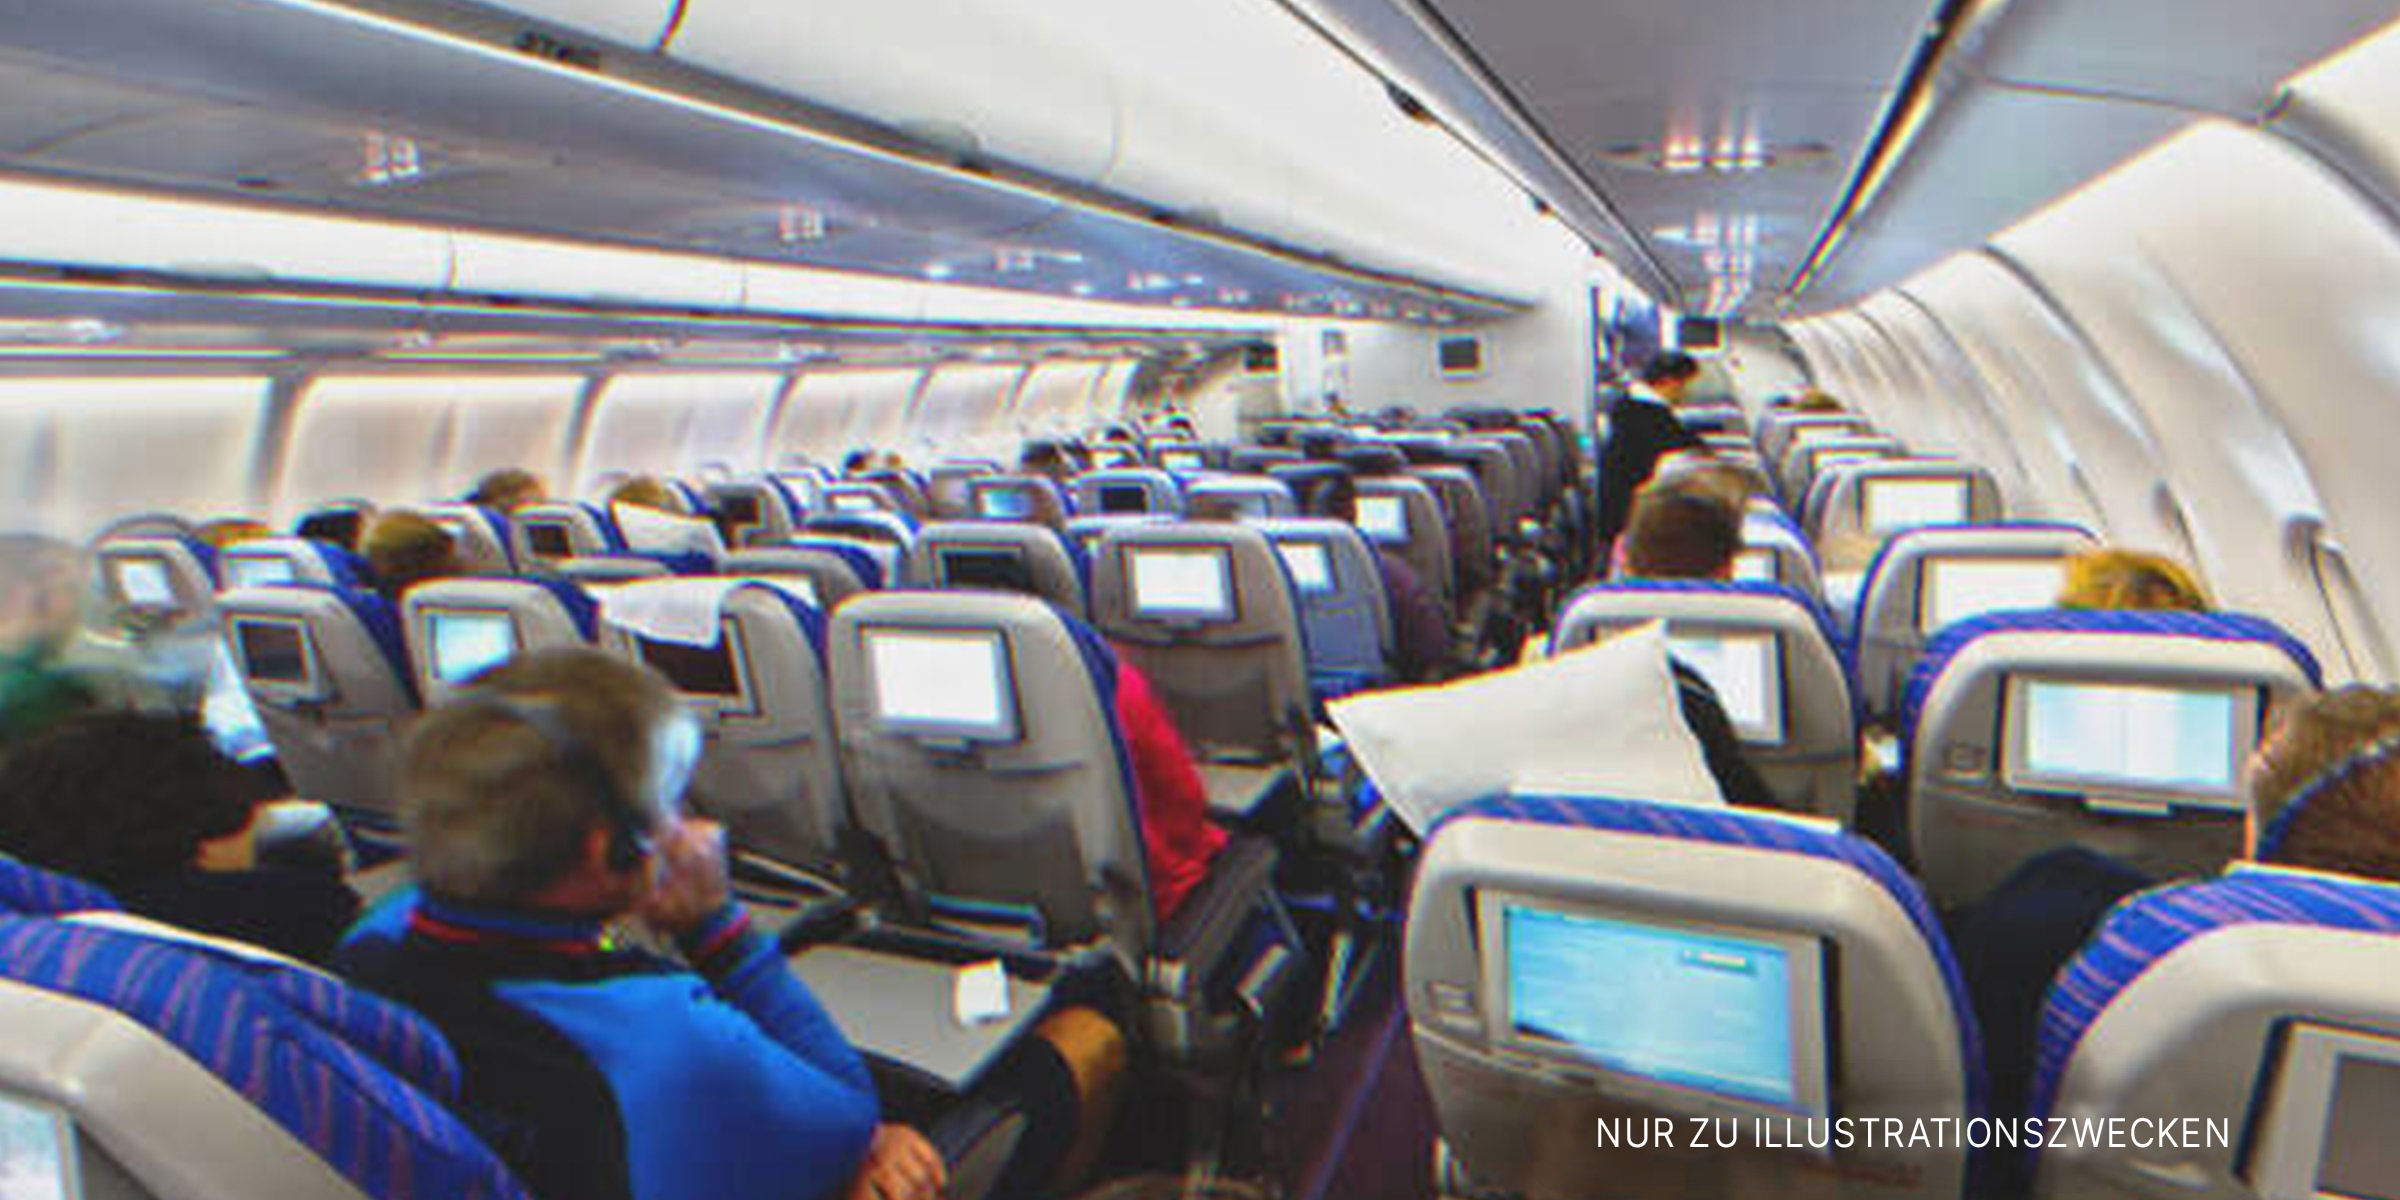 Passagiere in einem Flugzeug | Quelle: Shutterstock